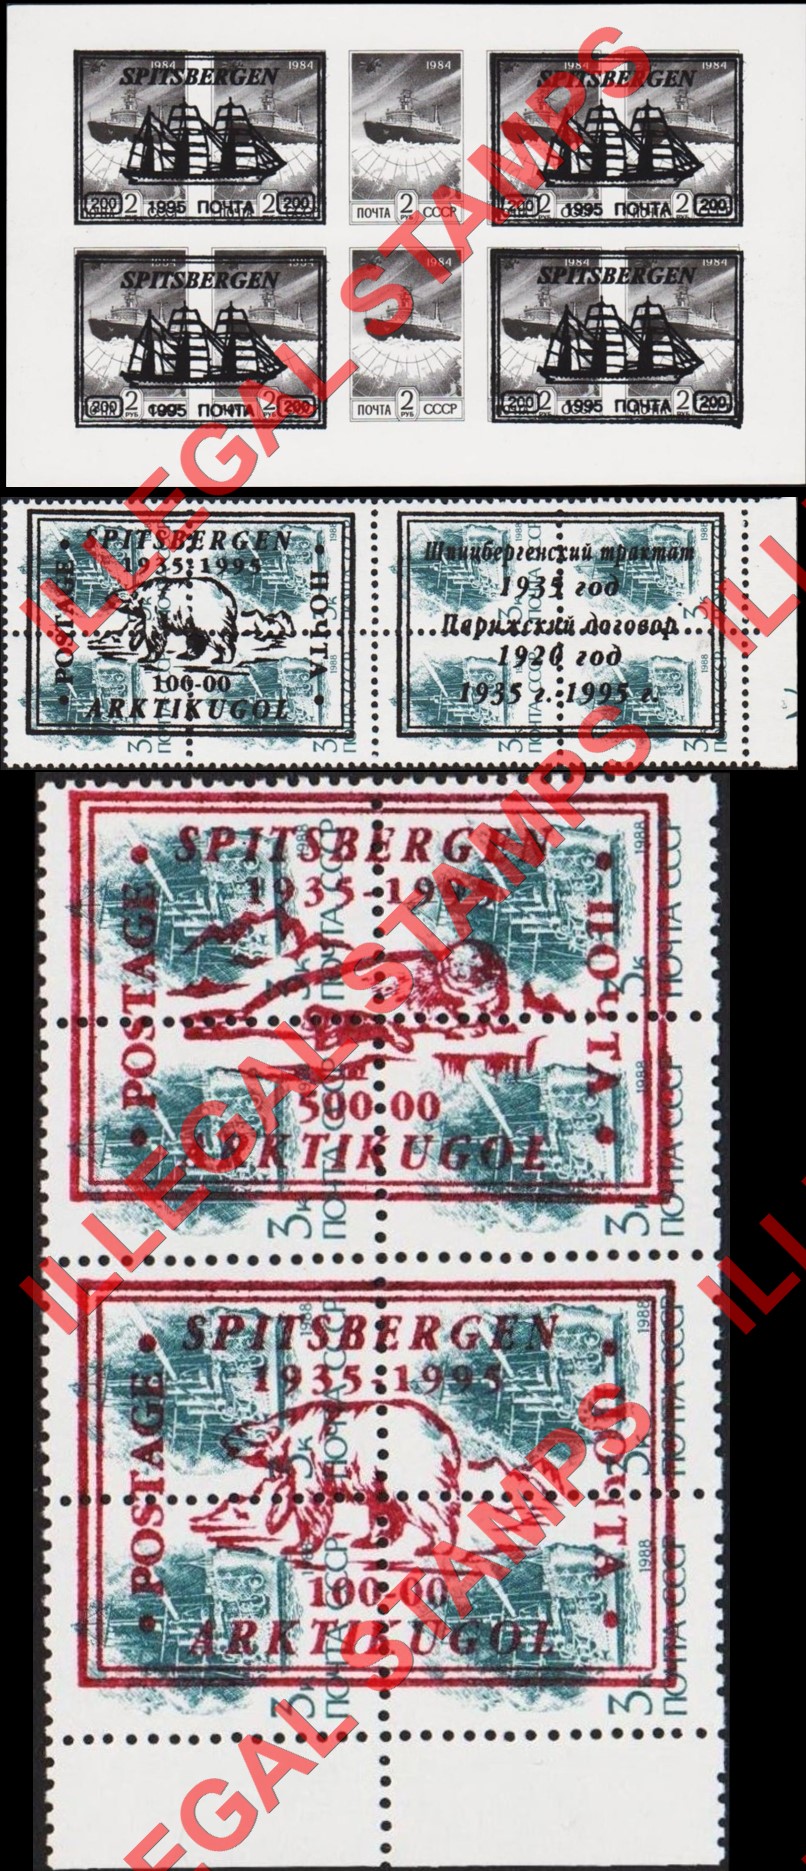 Spitsbergen Island 1995 Counterfeit Illegal Stamps